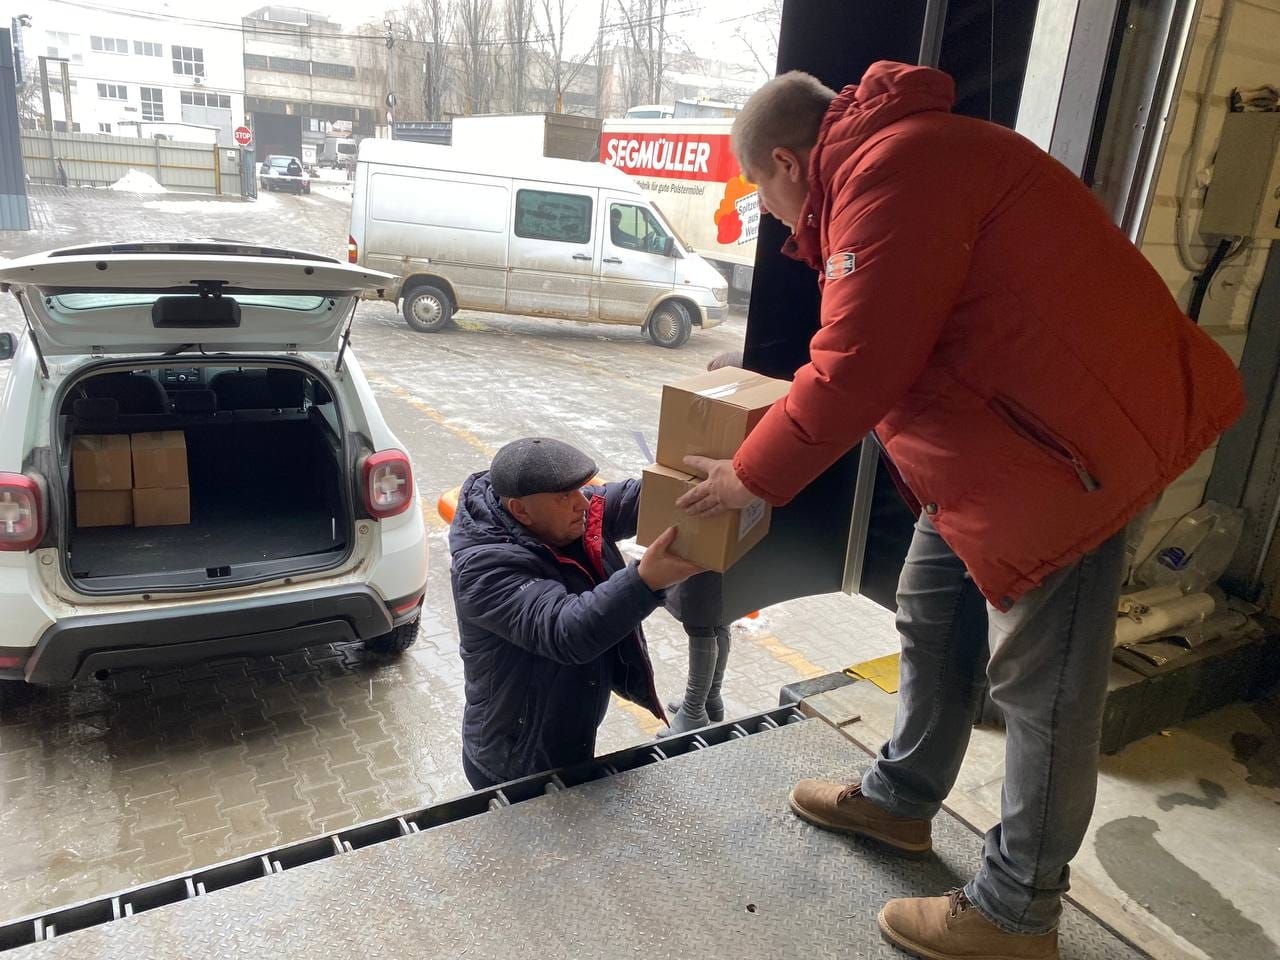 Ще 18 громад Вінниччини отримали пакунки малюка від Гумштабу